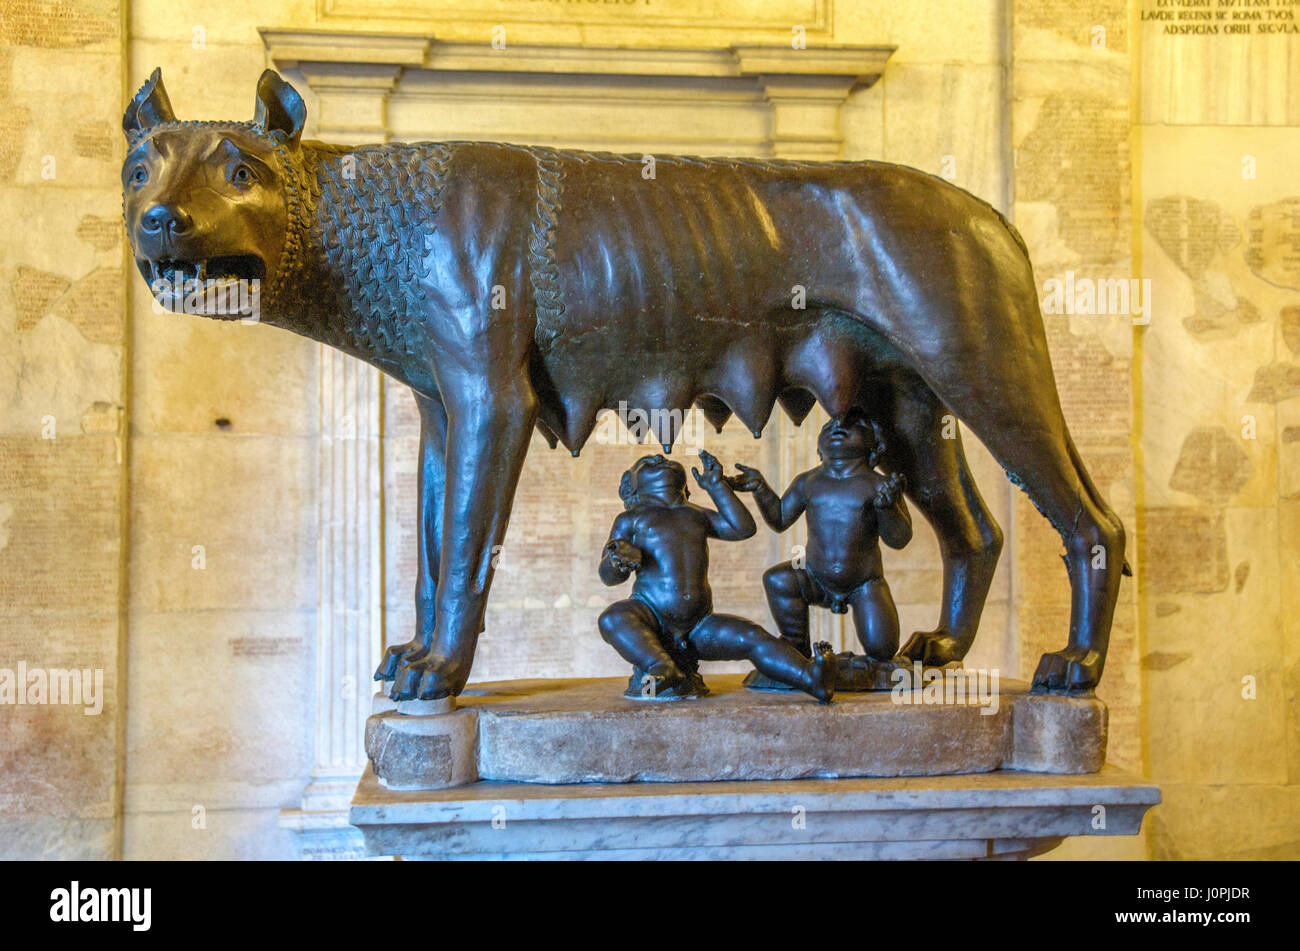 El etrusco estatua de bronce de la loba con Rómulo y Remo, Museo Capitolino, el Monte Capitolino, Roma, Italia, Europa Foto de stock